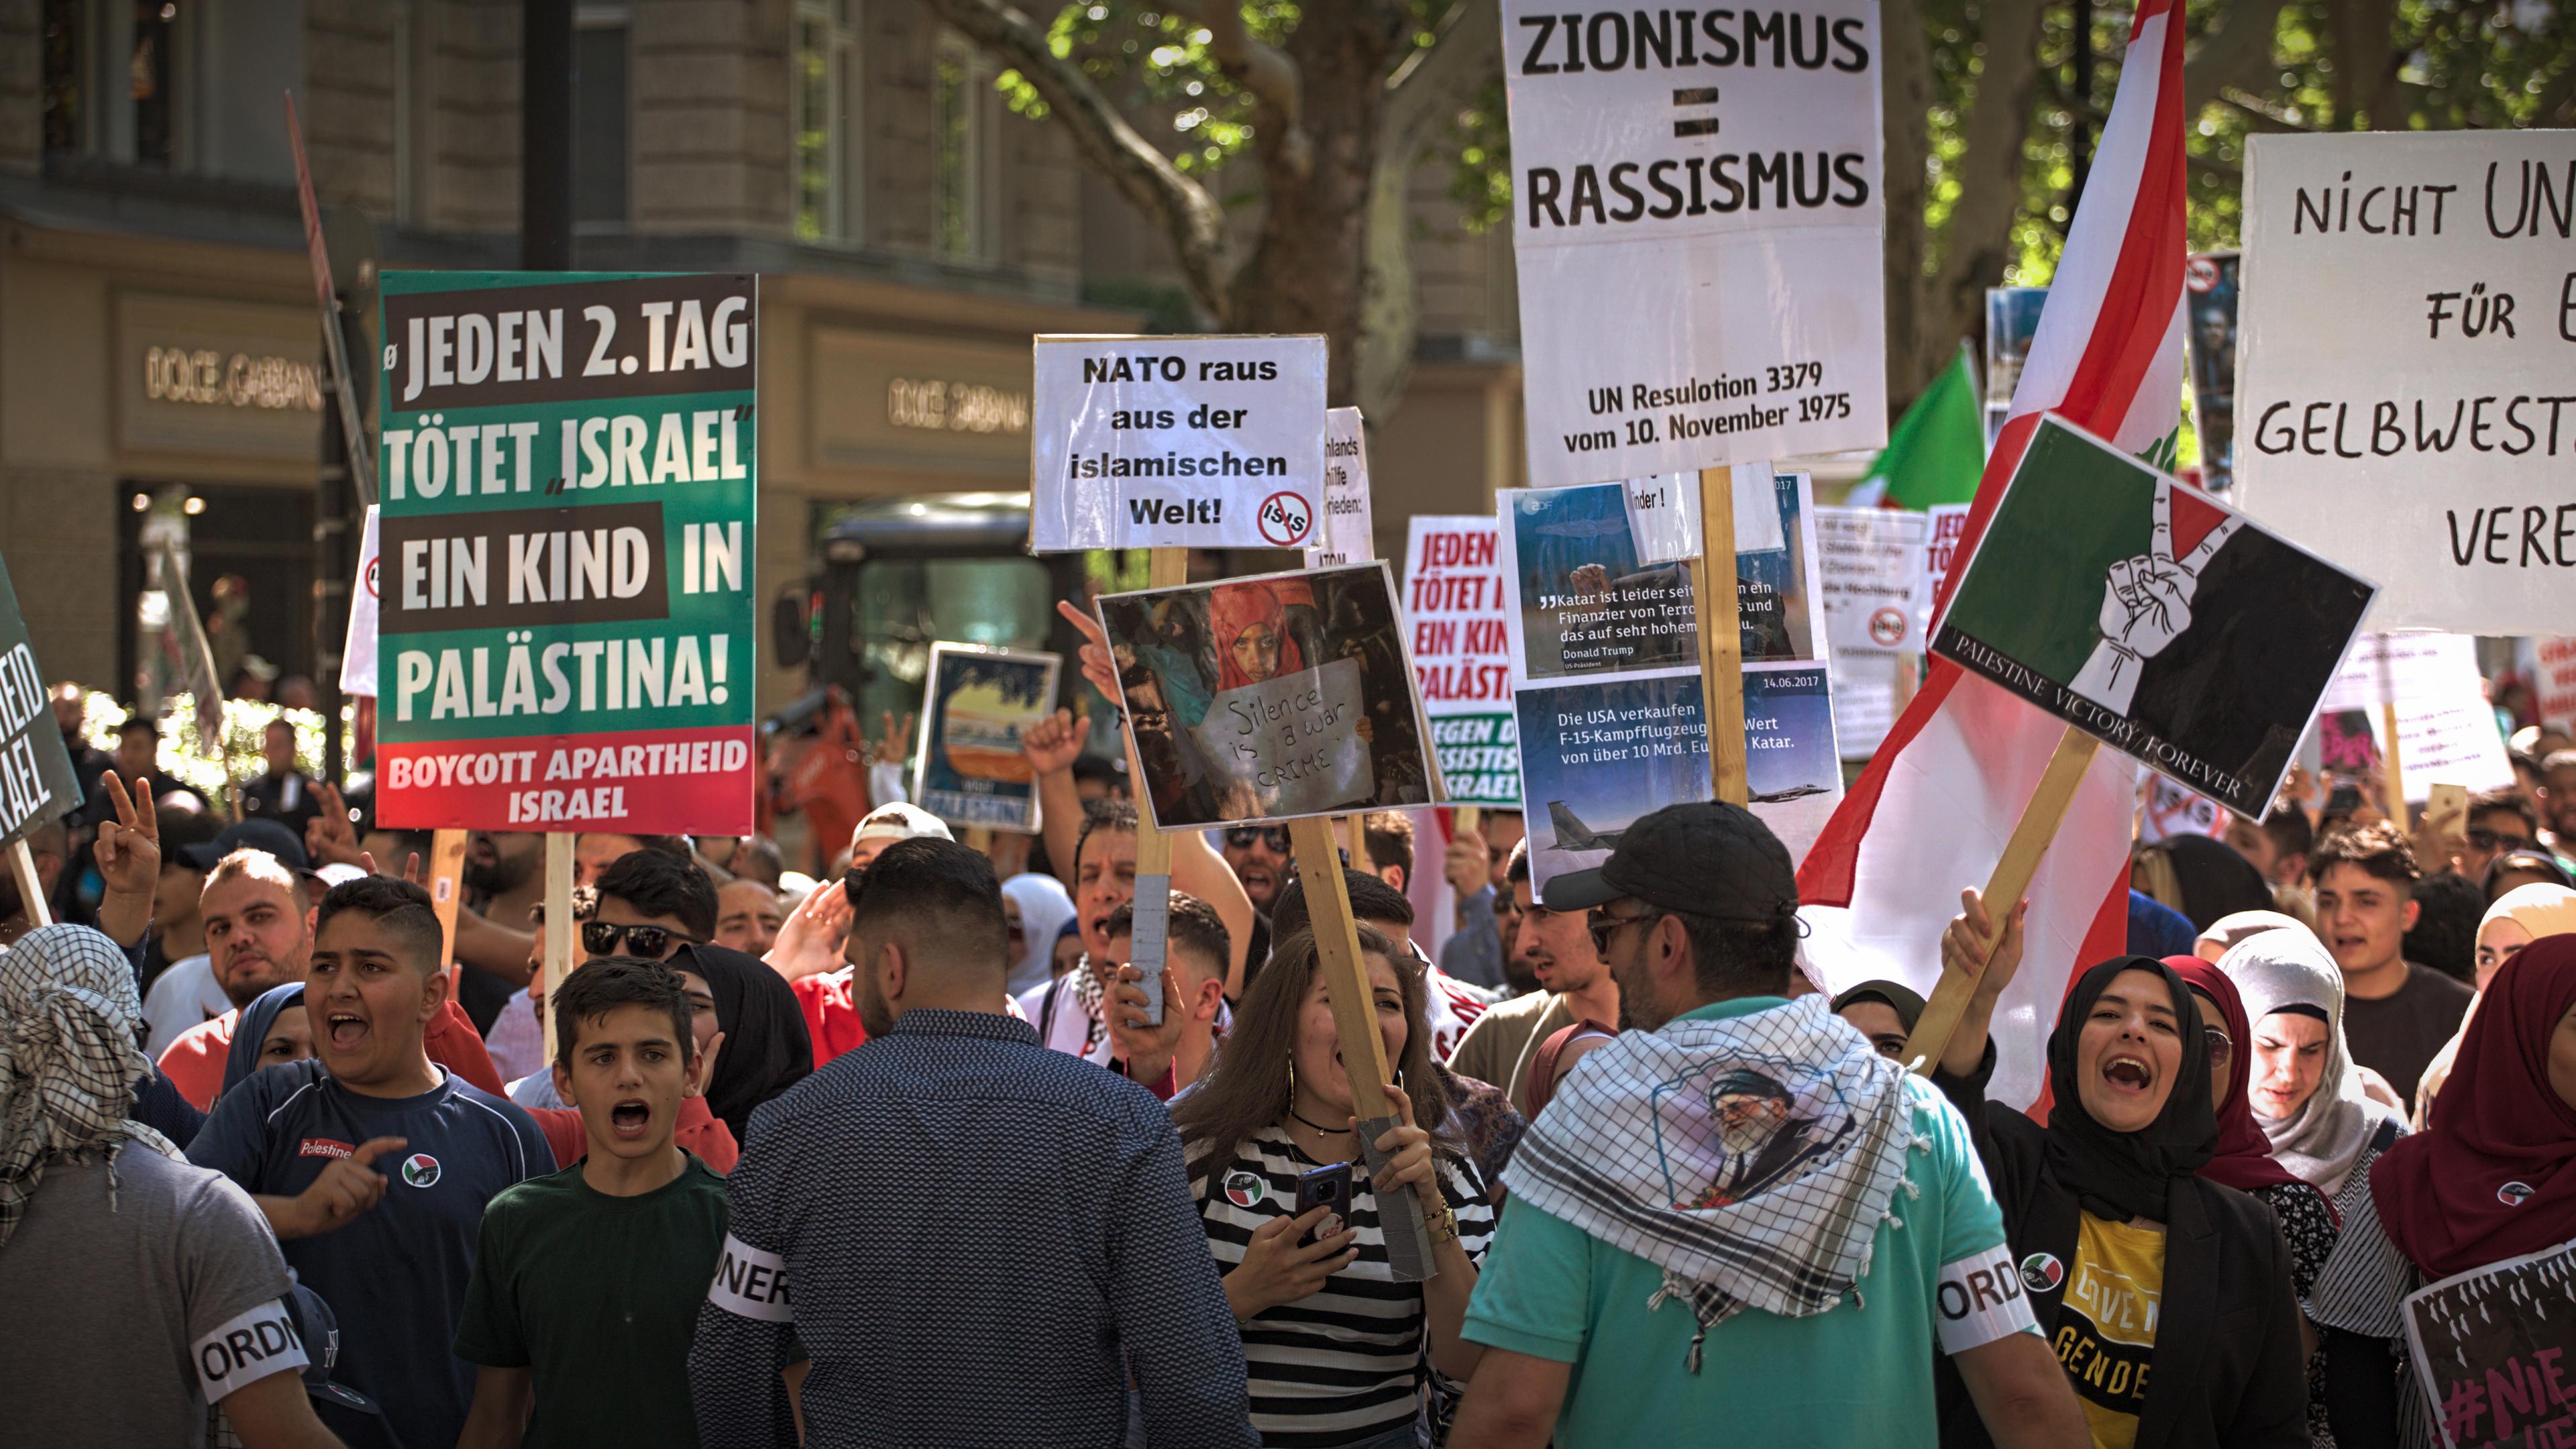 Während einer Demonstration halten mehrere Menschen Schilder in die Luft und schreien. Auf einem der Schilder steht die Aufschrift "Jeden 2. Tag tötet Israel ein Kind in Palästina".